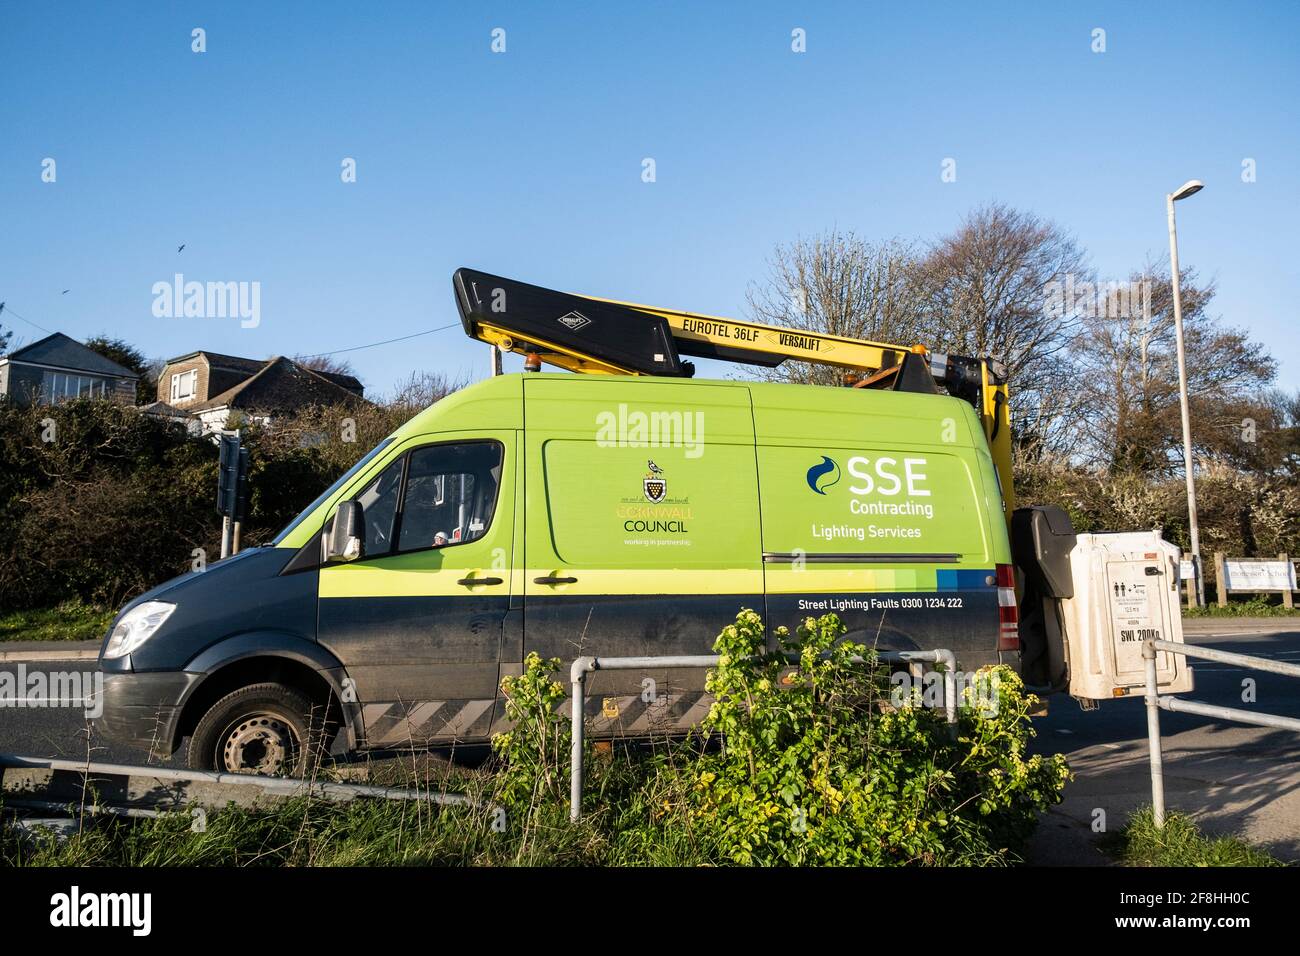 Un véhicule SSE Contracting Lighting Services équipé d'un Eurotel 36LF Versalift travaillant pour le Conseil de Cornwall garée sur le côté D'une route à Newquay Banque D'Images